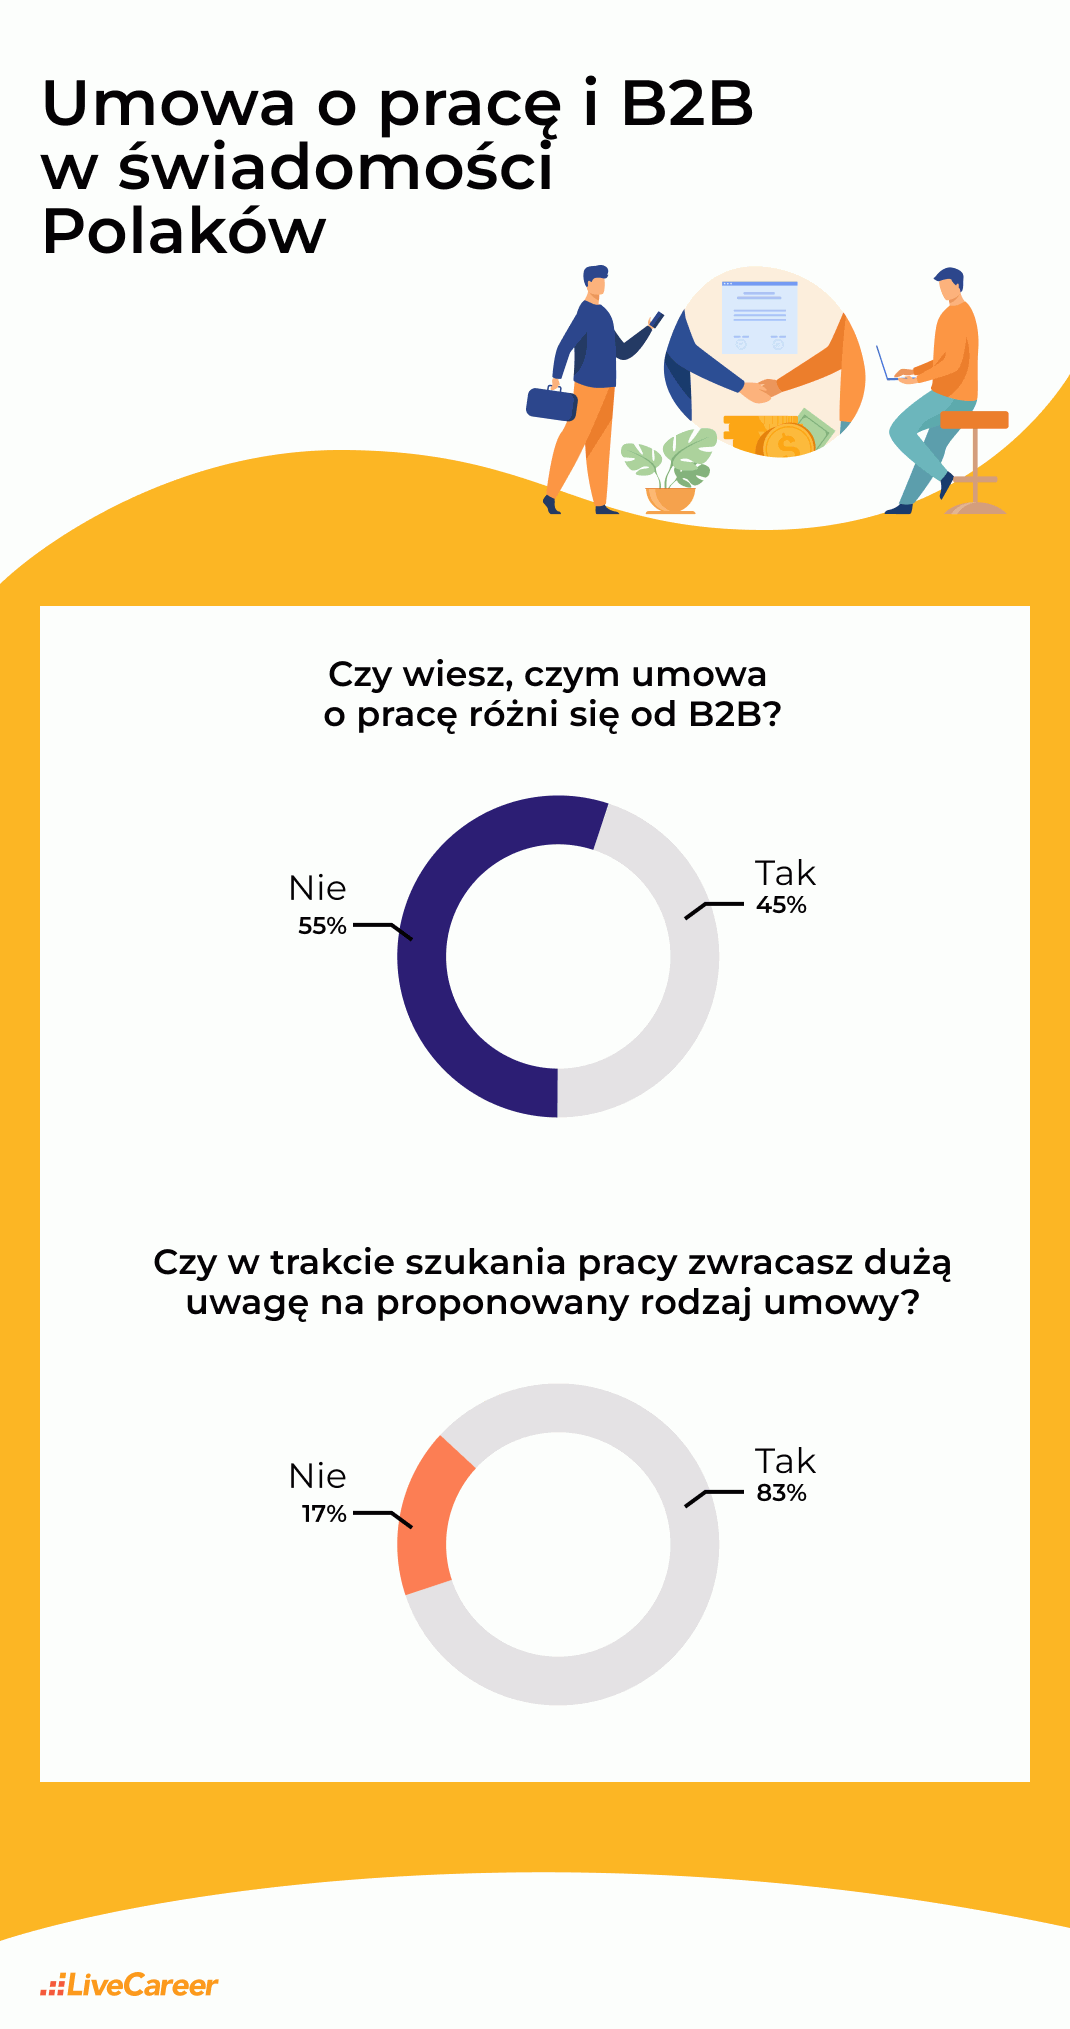 Infographic #1